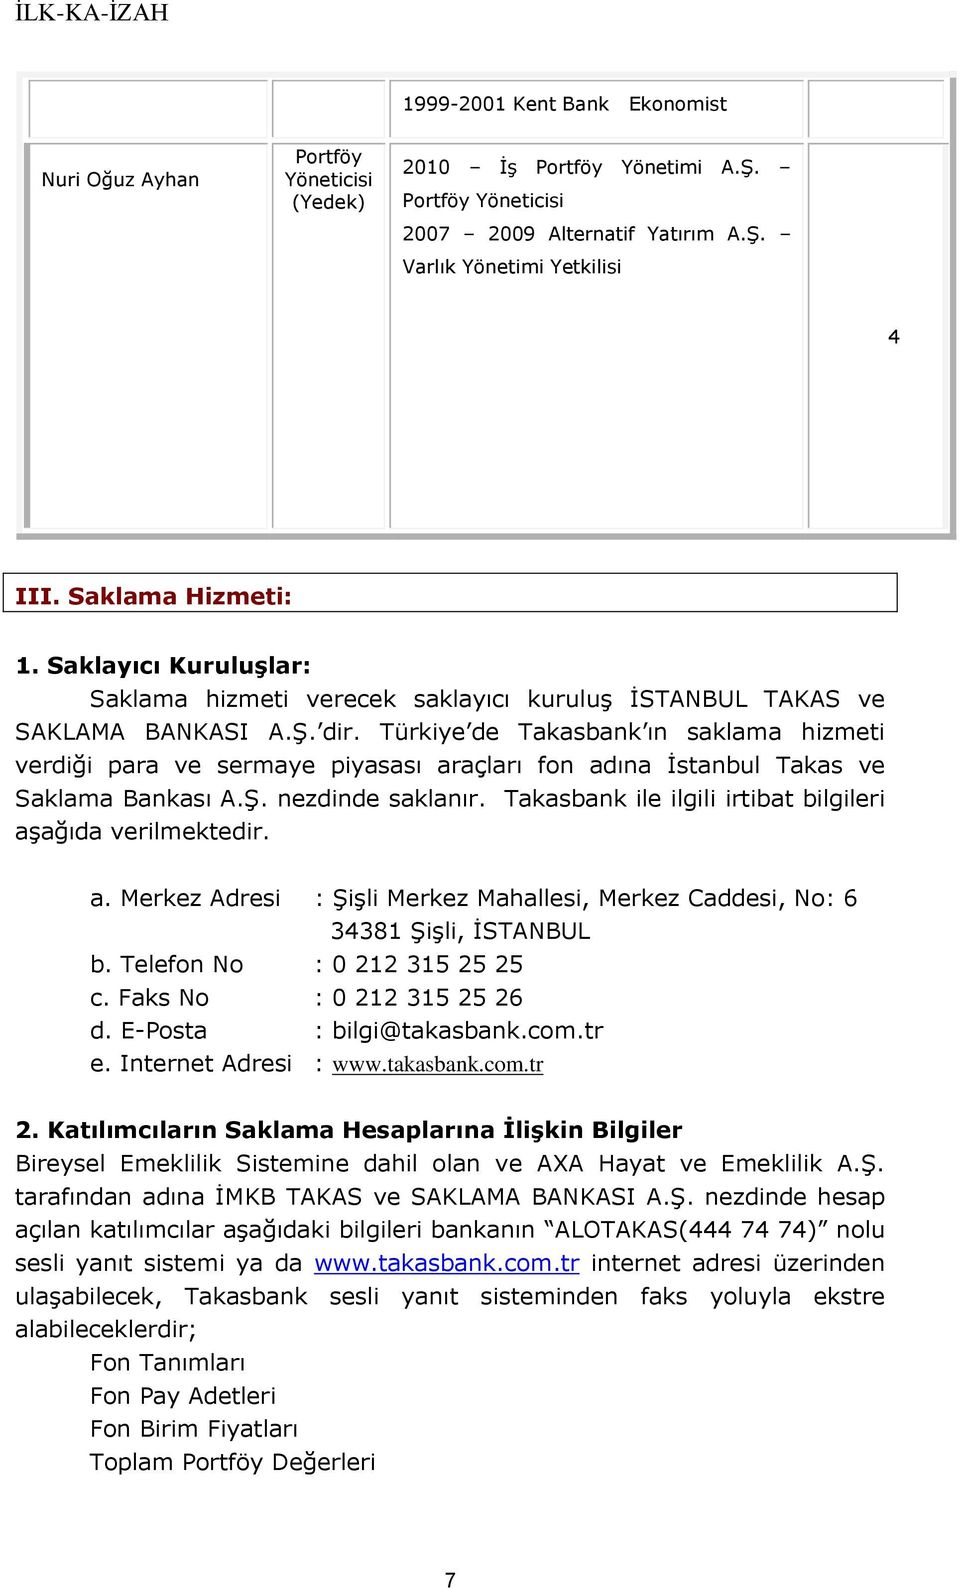 Türkiye de Takasbank ın saklama hizmeti verdiği para ve sermaye piyasası araçları fon adına İstanbul Takas ve Saklama Bankası A.Ş. nezdinde saklanır.